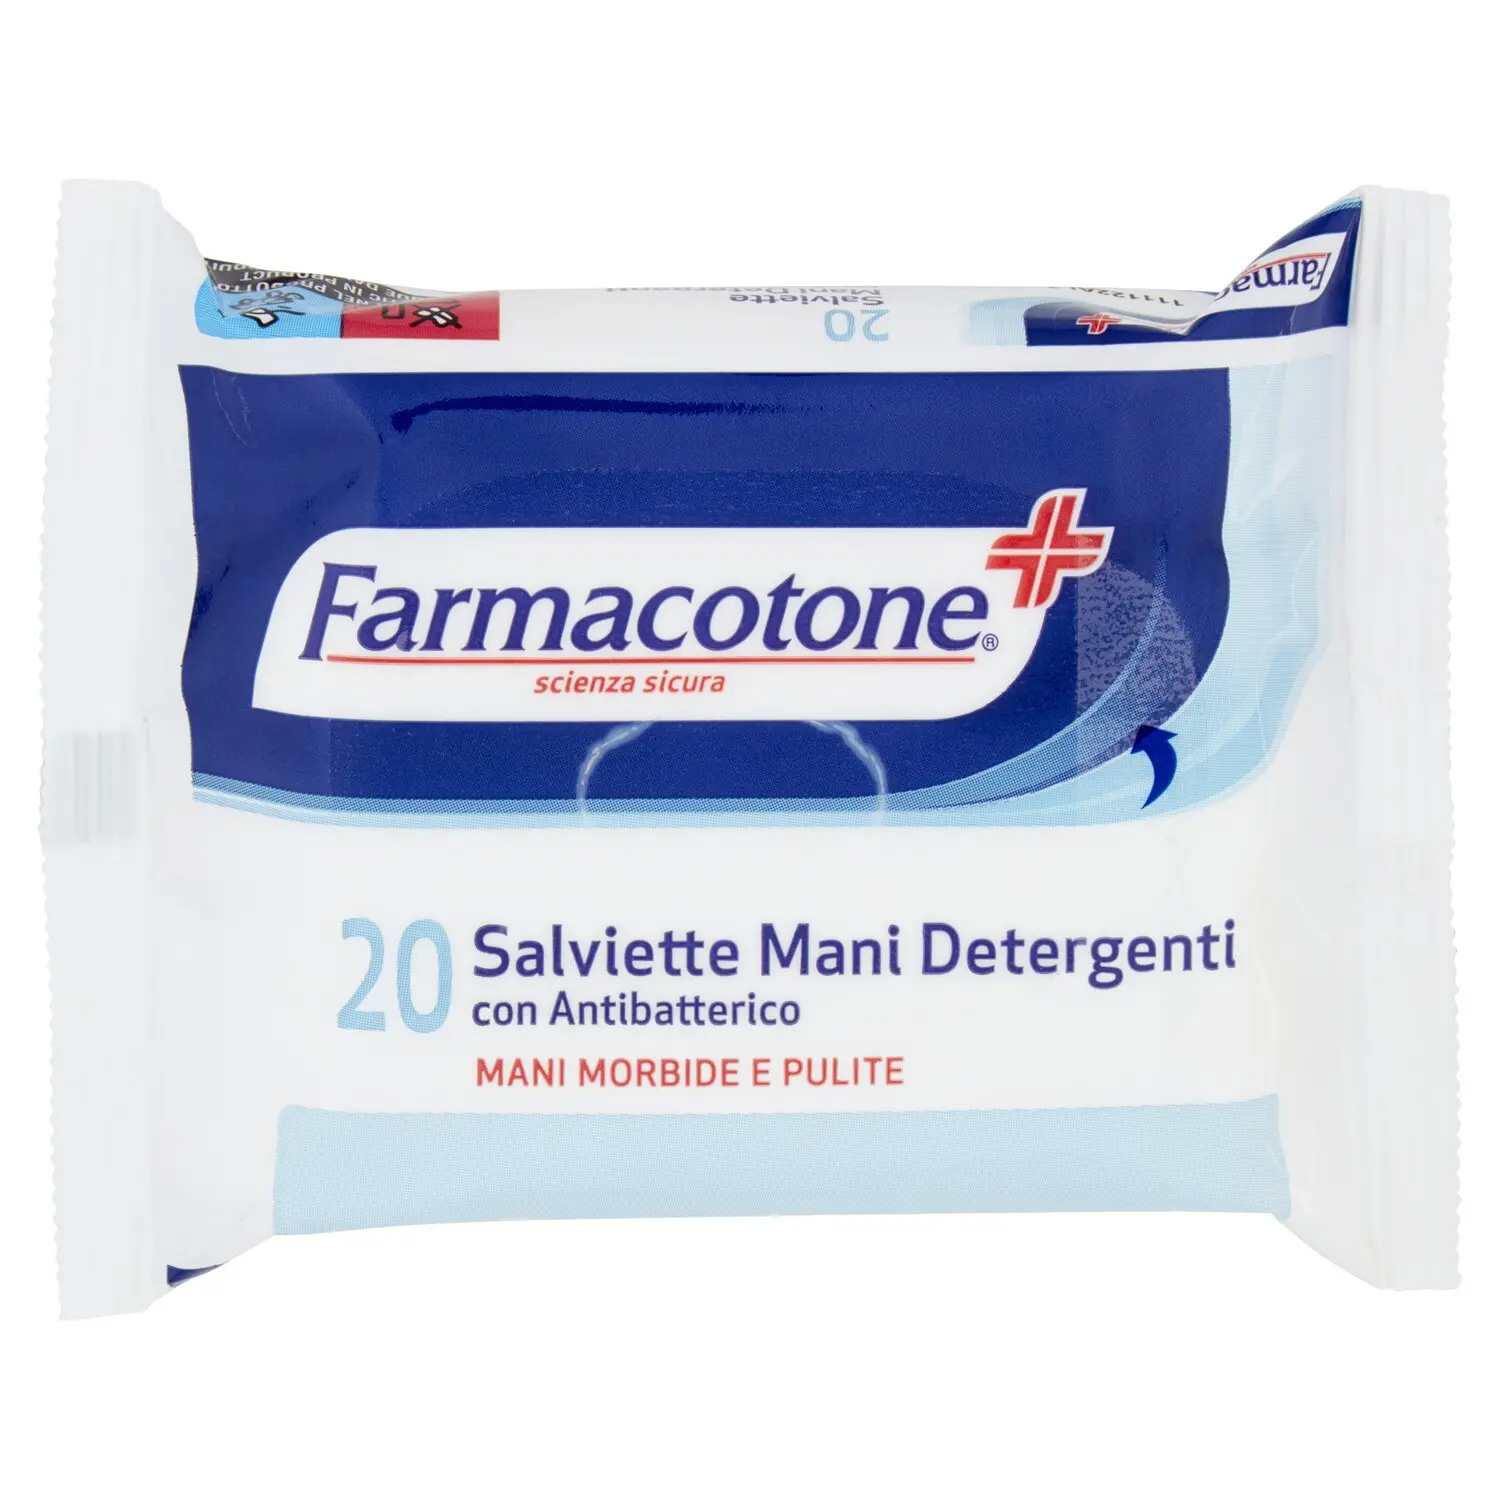 Farmacotone Salviette Mani Detergenti con Antibatterico 20 pz